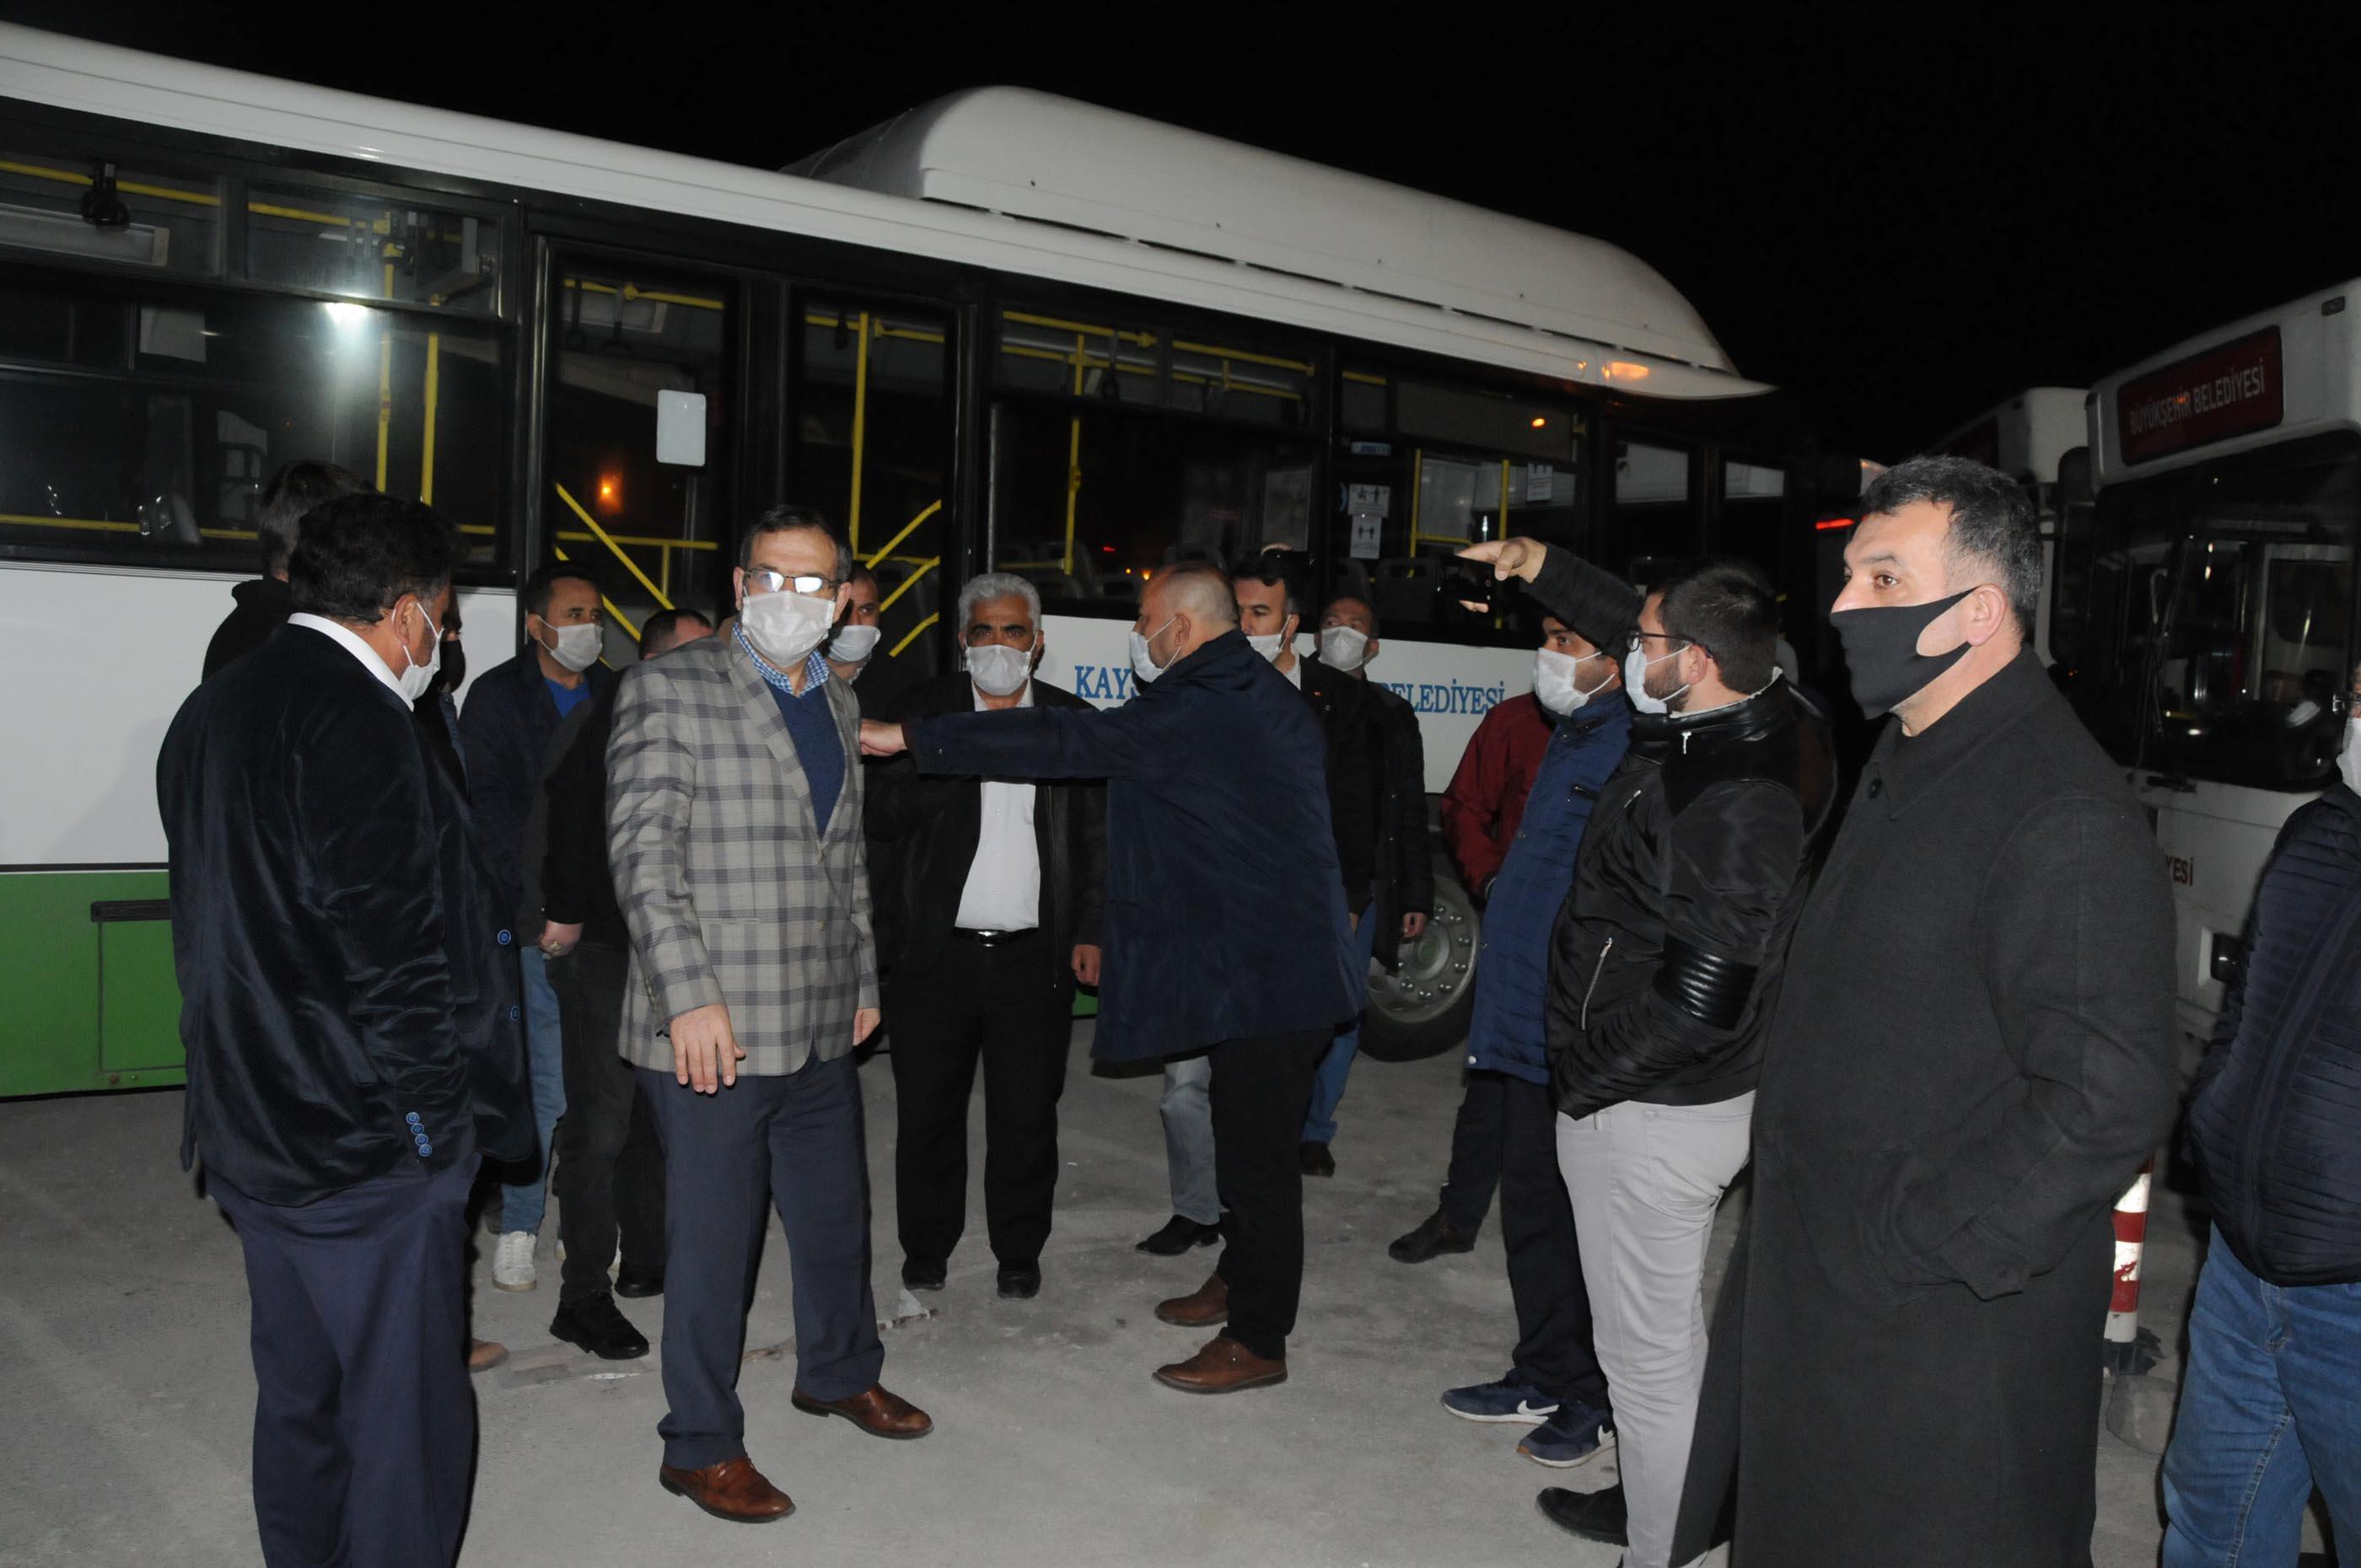 Halk otobüs şoförleri, gönderilen mesaj üzerine yol kapatıp eylem yaptı